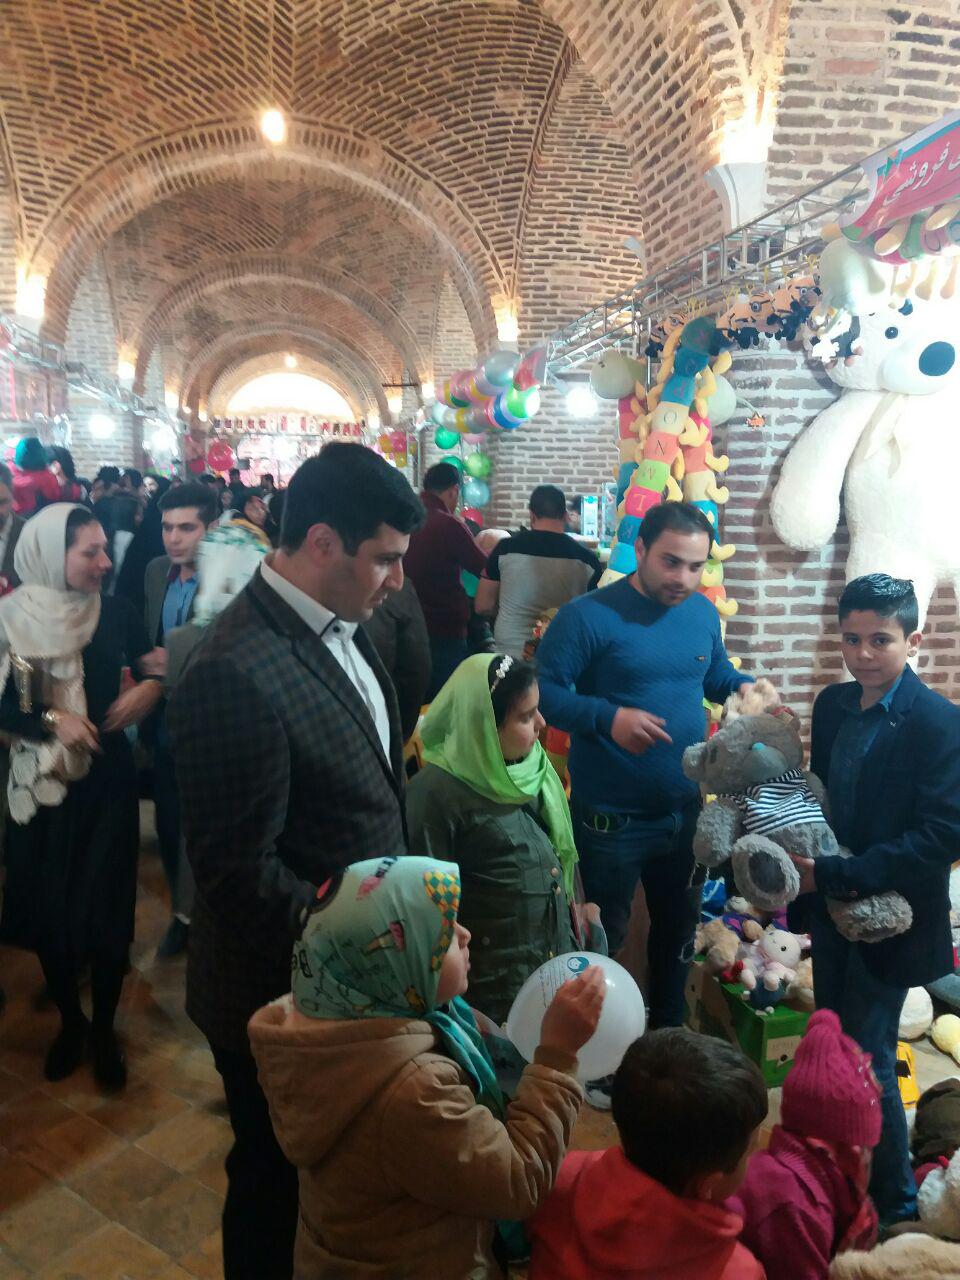 برگزاری جشنواره اسباب بازی با مشارکت شرکت نمایشگاه قزوین و سازمان فرهنگی ورزشی در سرای سعدالسلطنه